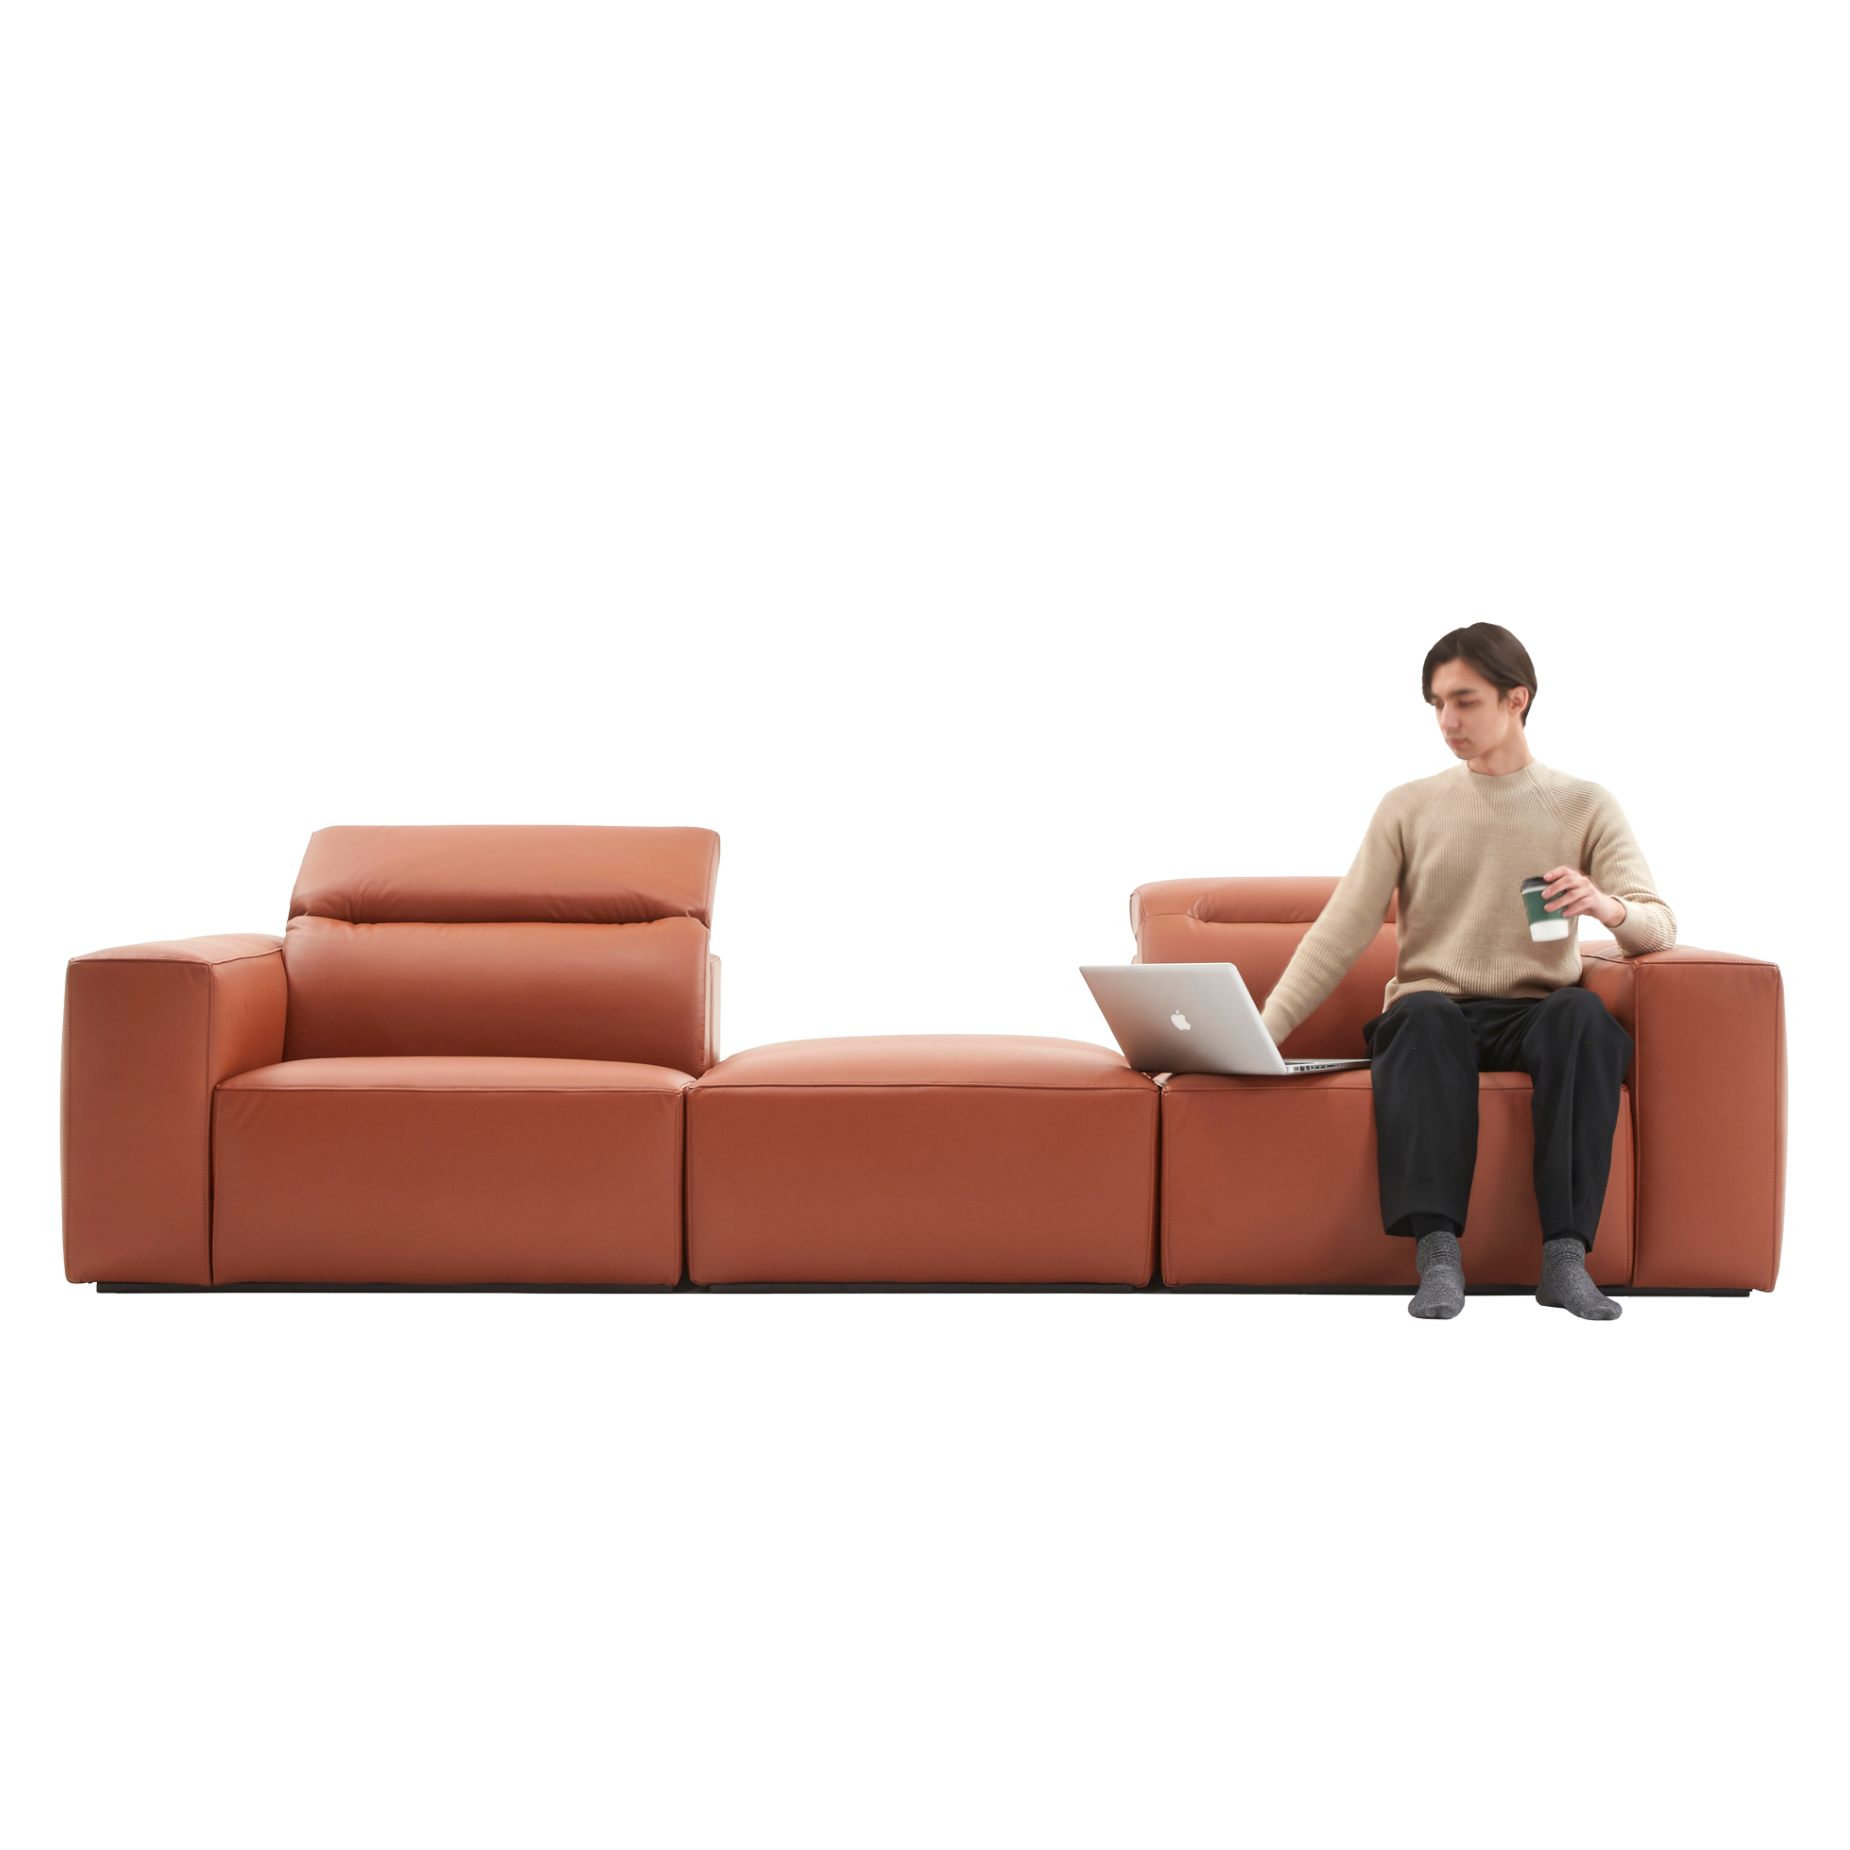 (주)도이치 전시품 판매 (일산)     [4주 주문제작]              DOICH ®    PEN1 modular sofa 도이치 펜1 모듈 3인소파+스툴  /(올가죽 사양/ 7개 가죽컬렉션 선택)